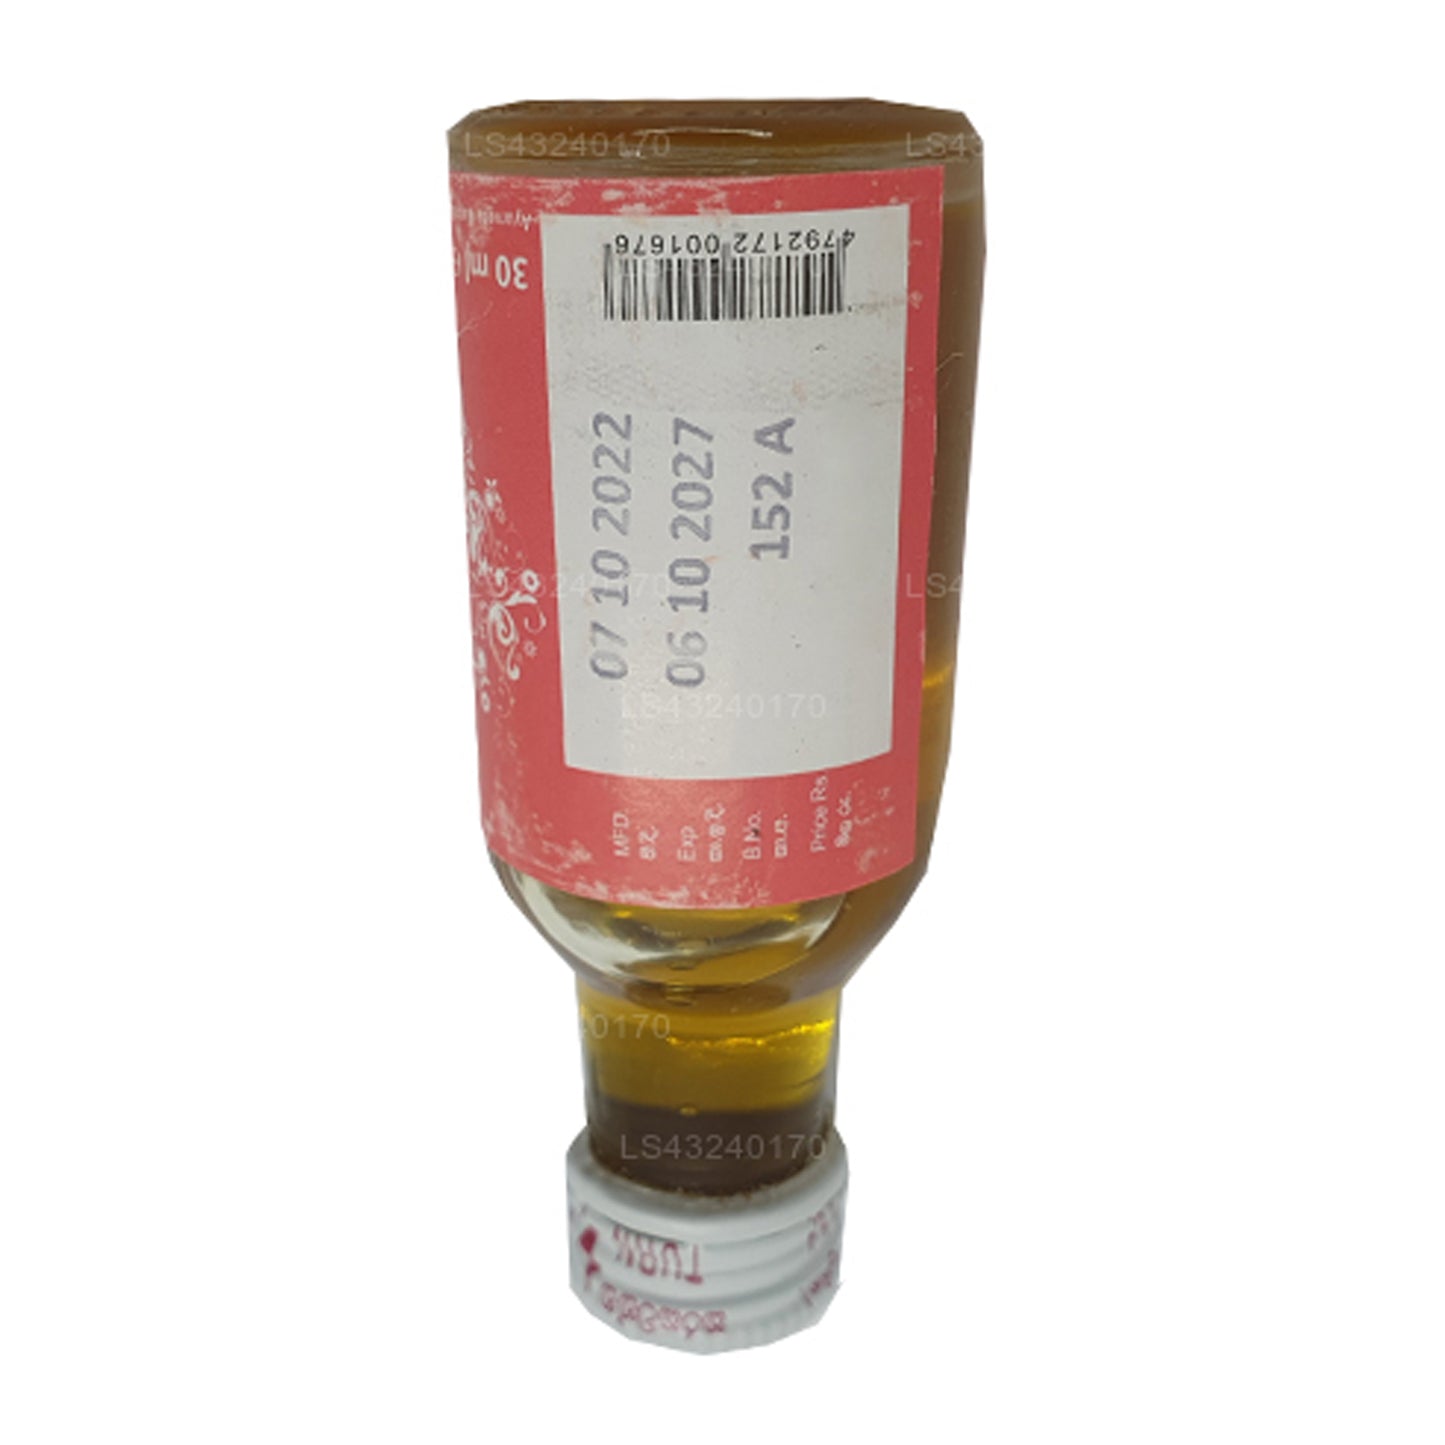 Siddhalepa Sarshapadi Öl (30 ml)